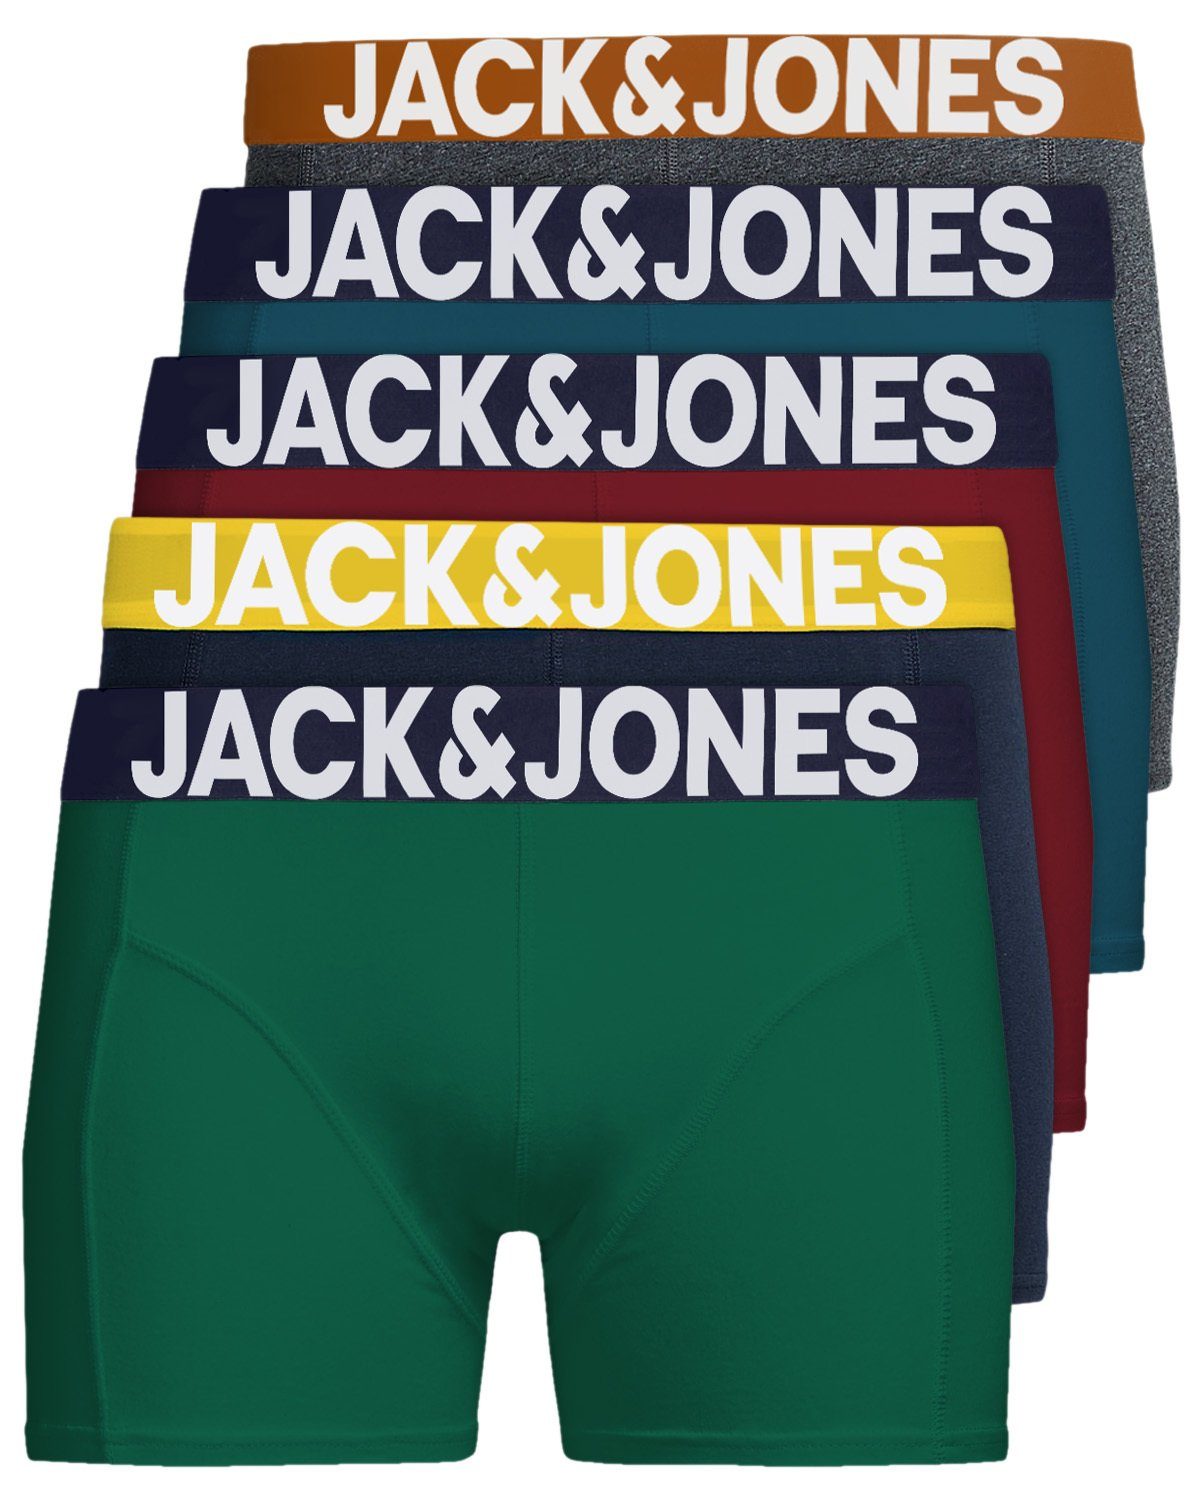 Jack & Jones Боксерські чоловічі труси, боксерки Solid (5-St., 5er Pack) gute Passform durch elastische Baumwollqualität